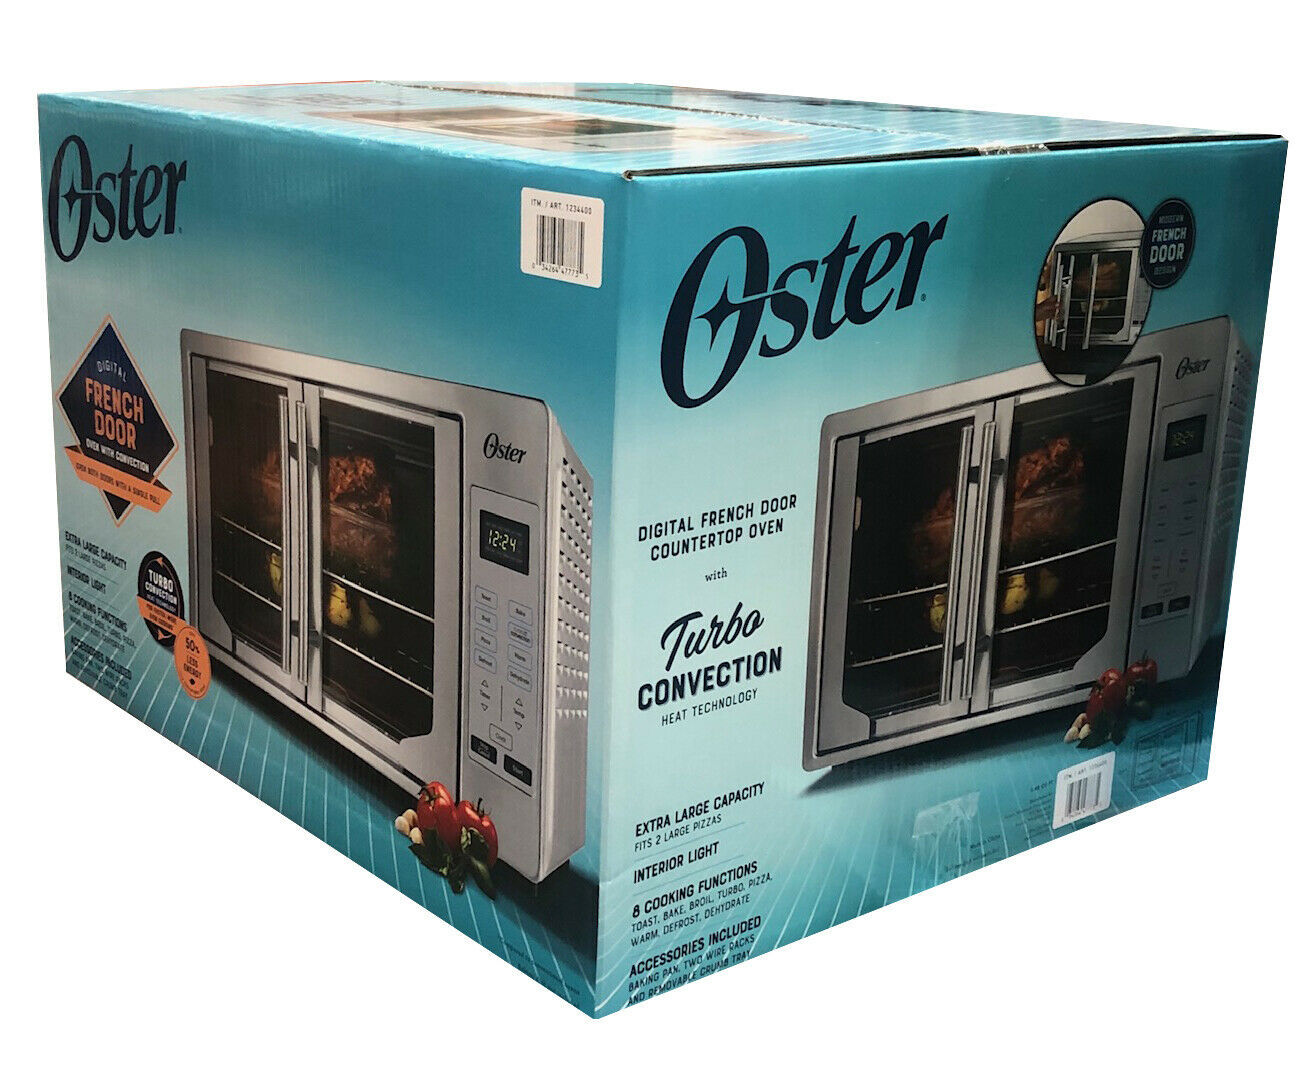  OSTER TSSTTVFDDG Toaster Oven - 1525W   - $256.78